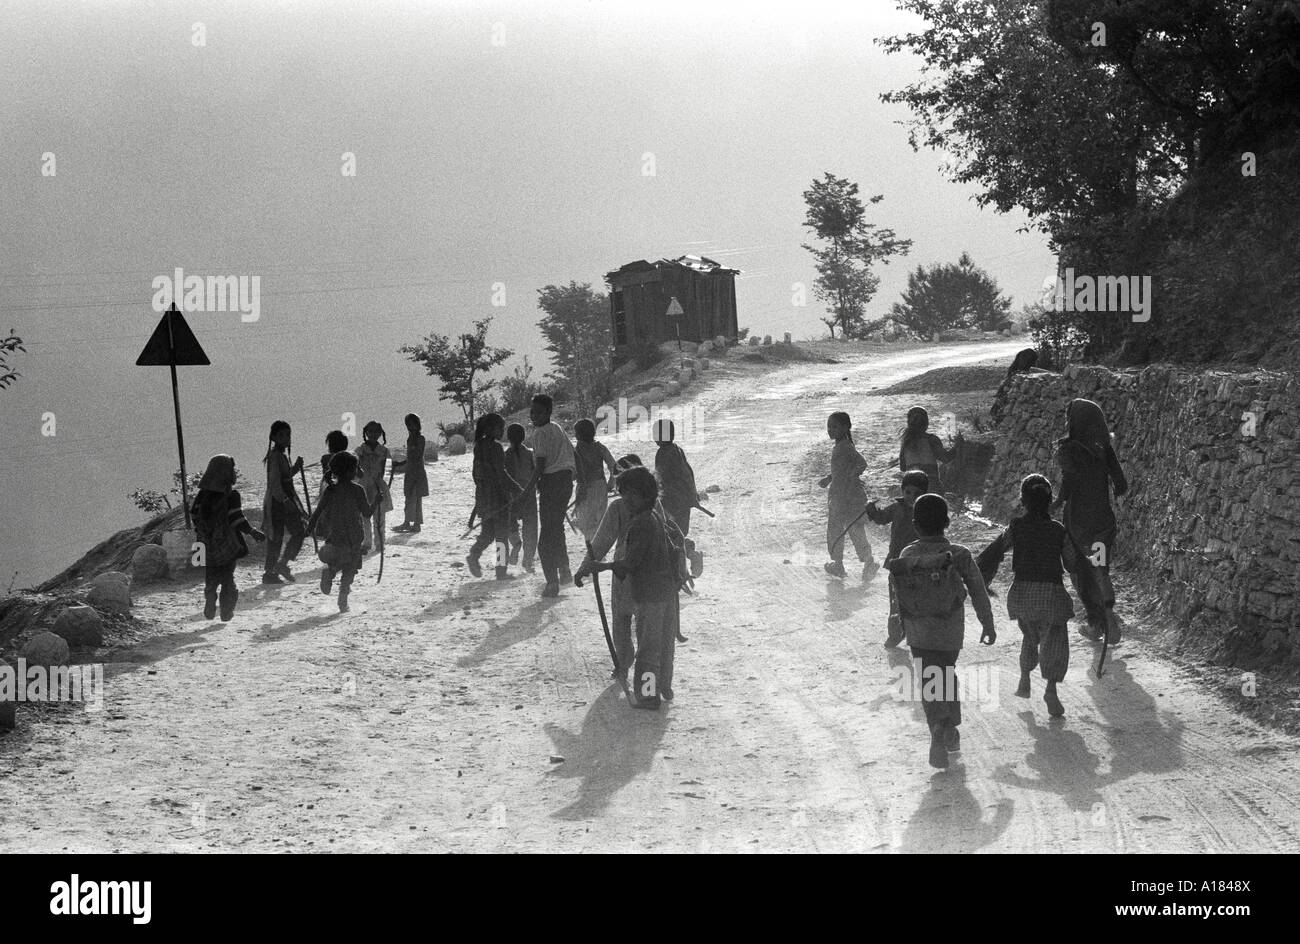 B/N di bambini da un villaggio himalayano camminare su una strada di montagna a scuola alla luce del mattino presto. Uttarkashi, Garwhal Himal, N.India Foto Stock